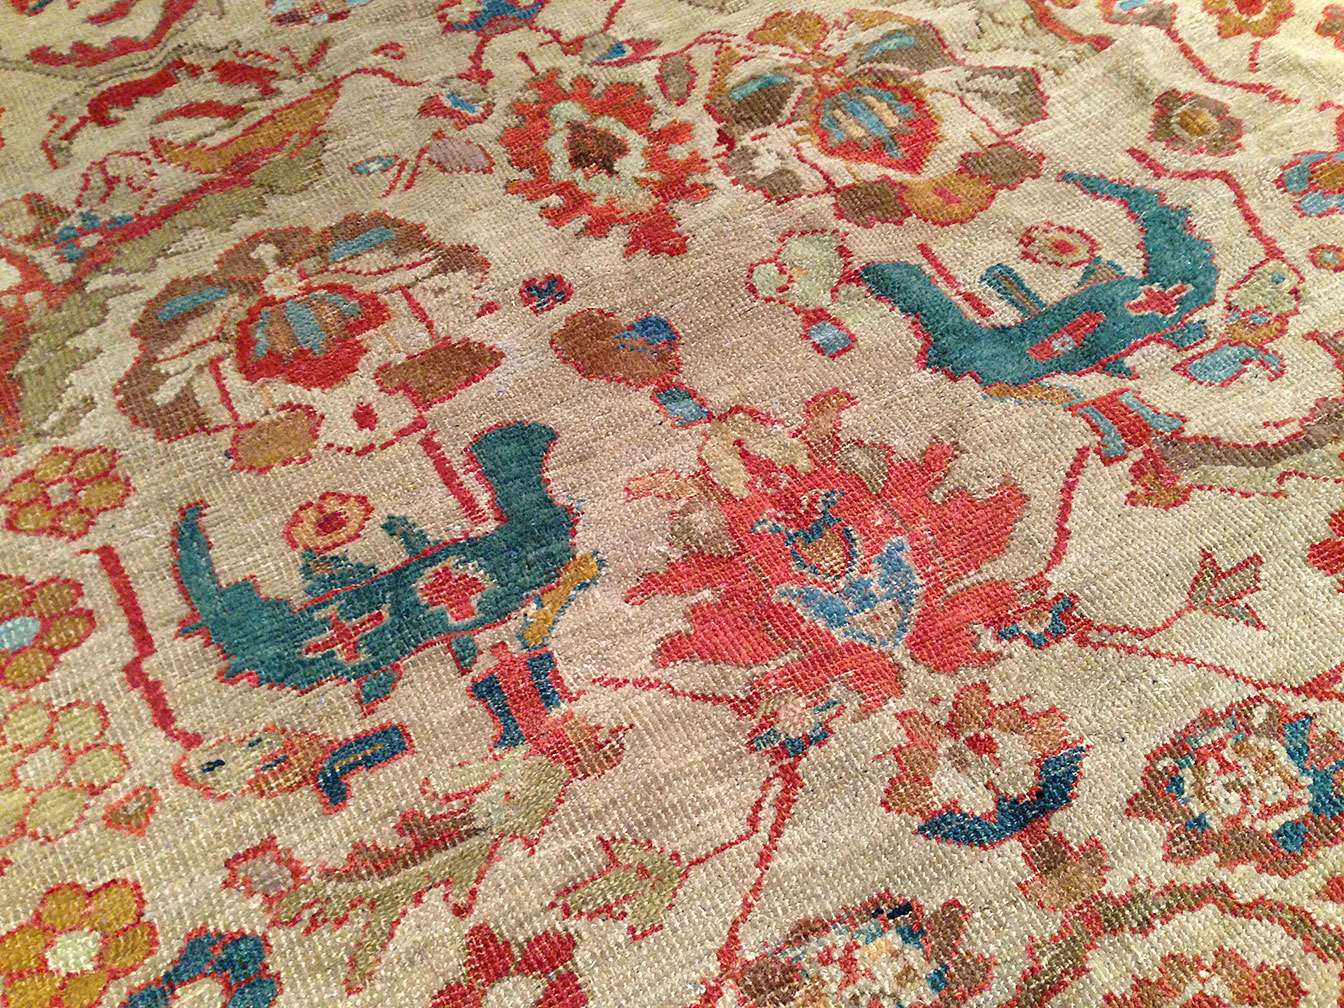 Antique sultan abad Carpet - # 50142